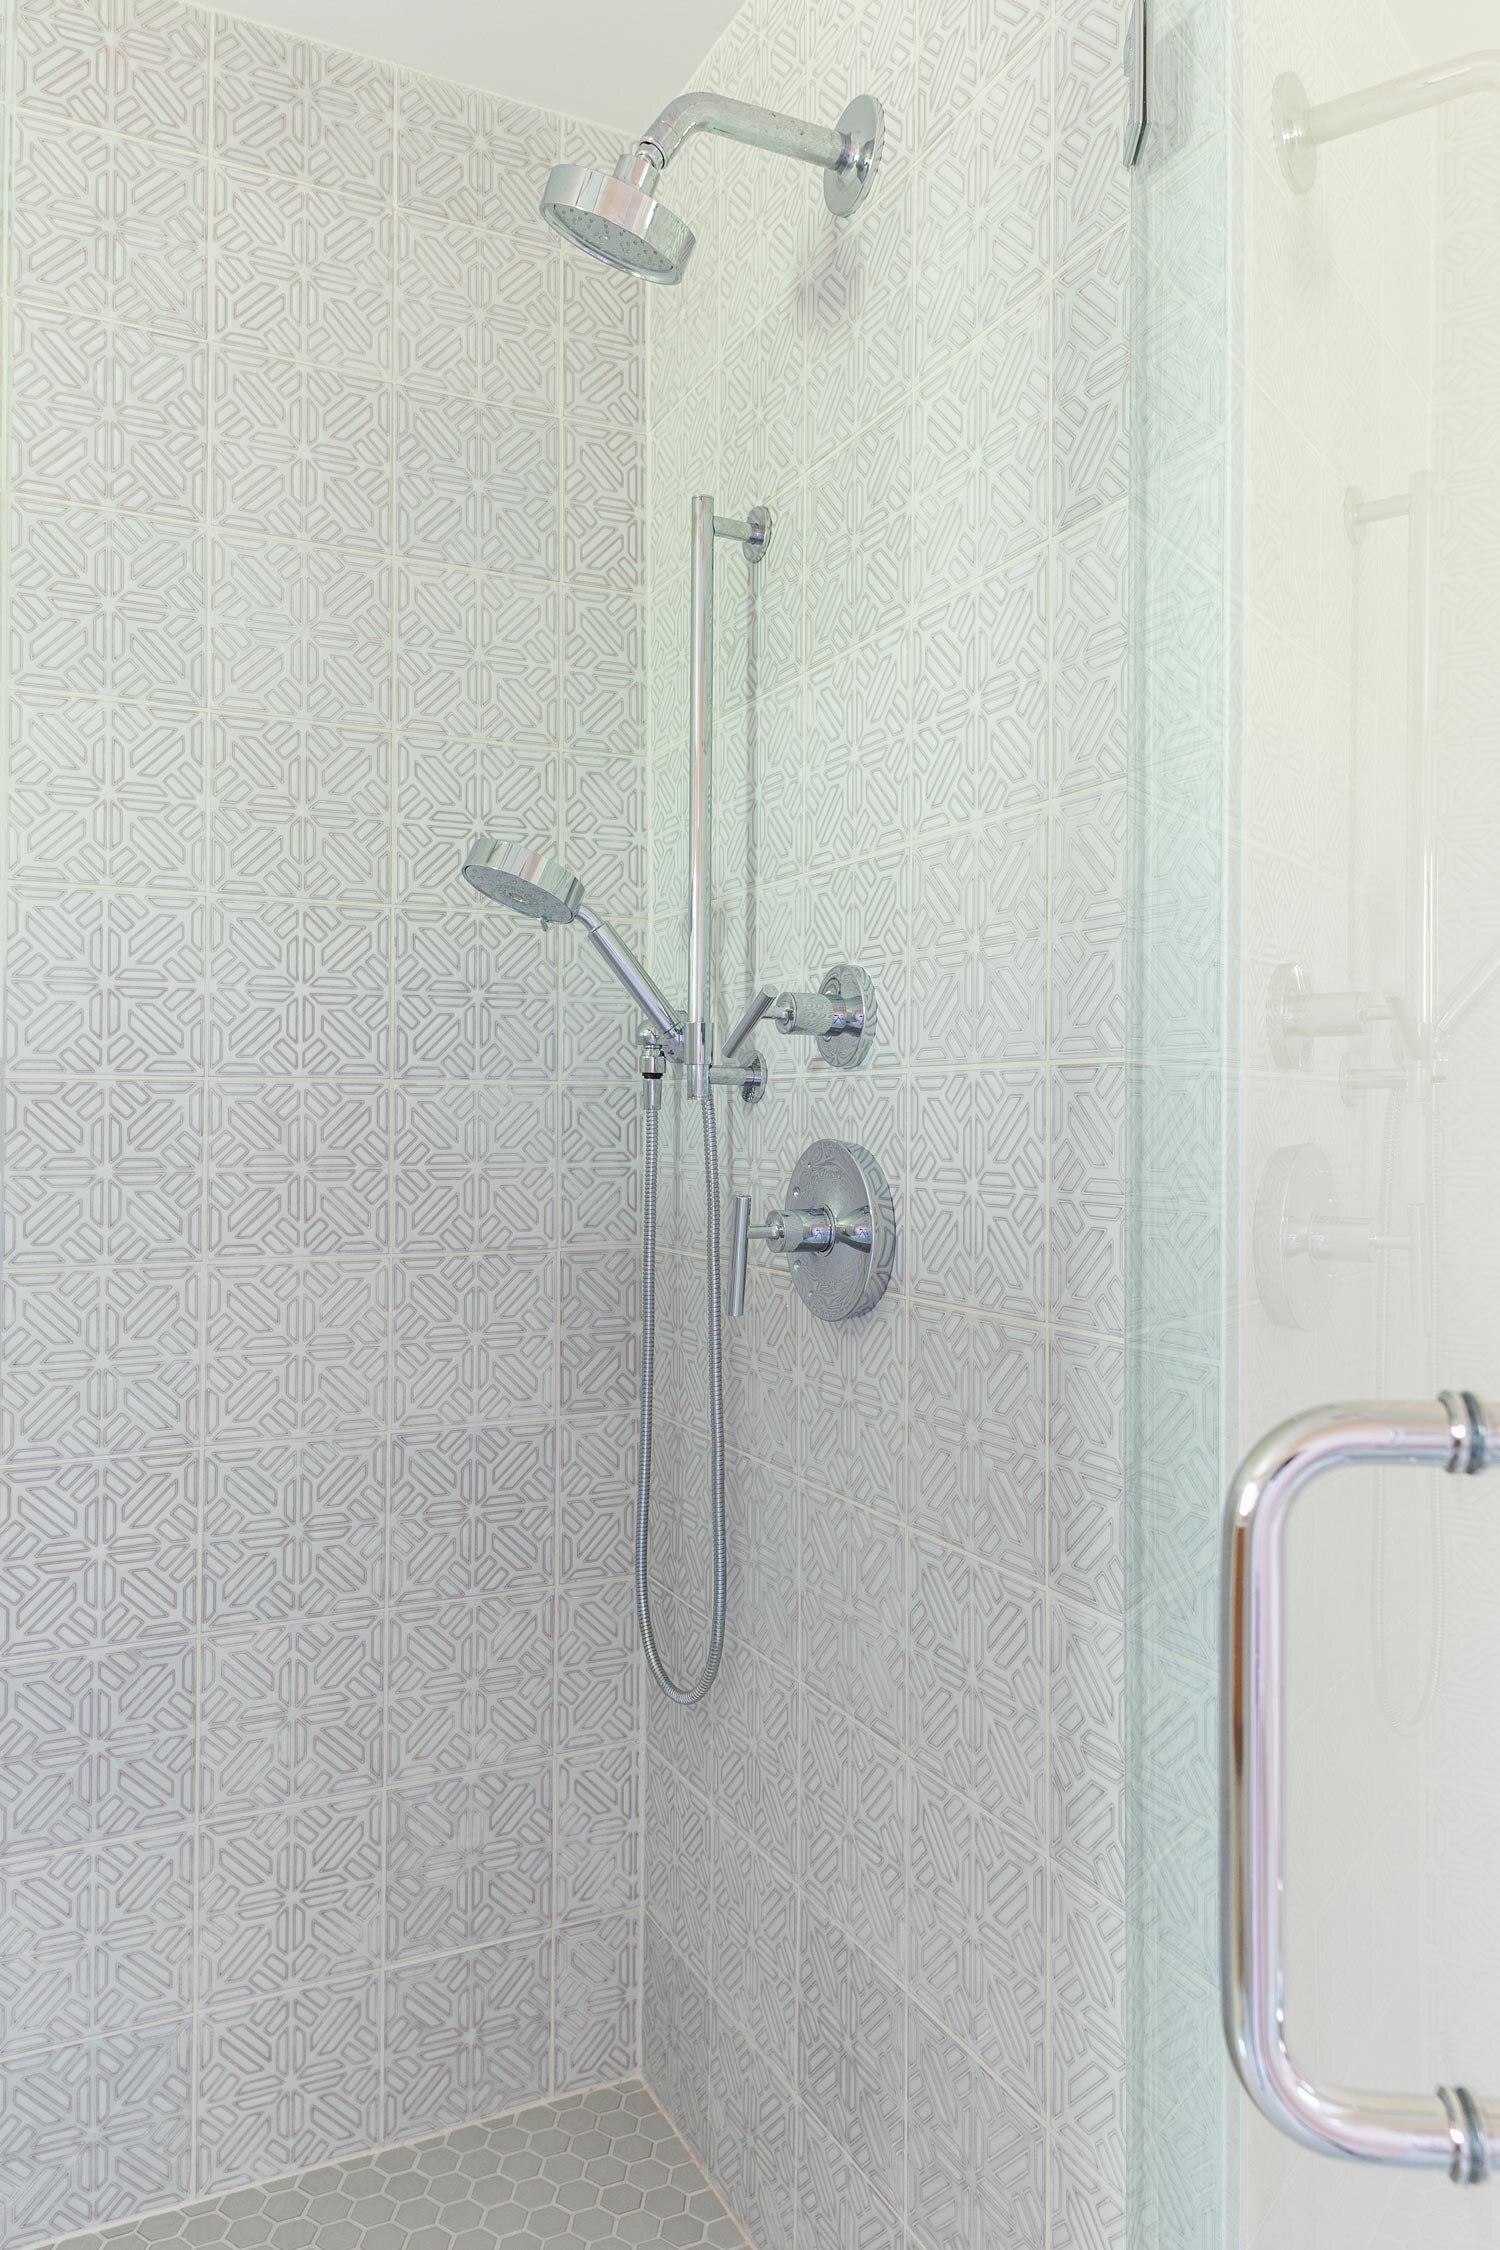 Kohler in walk-in shower.jpg